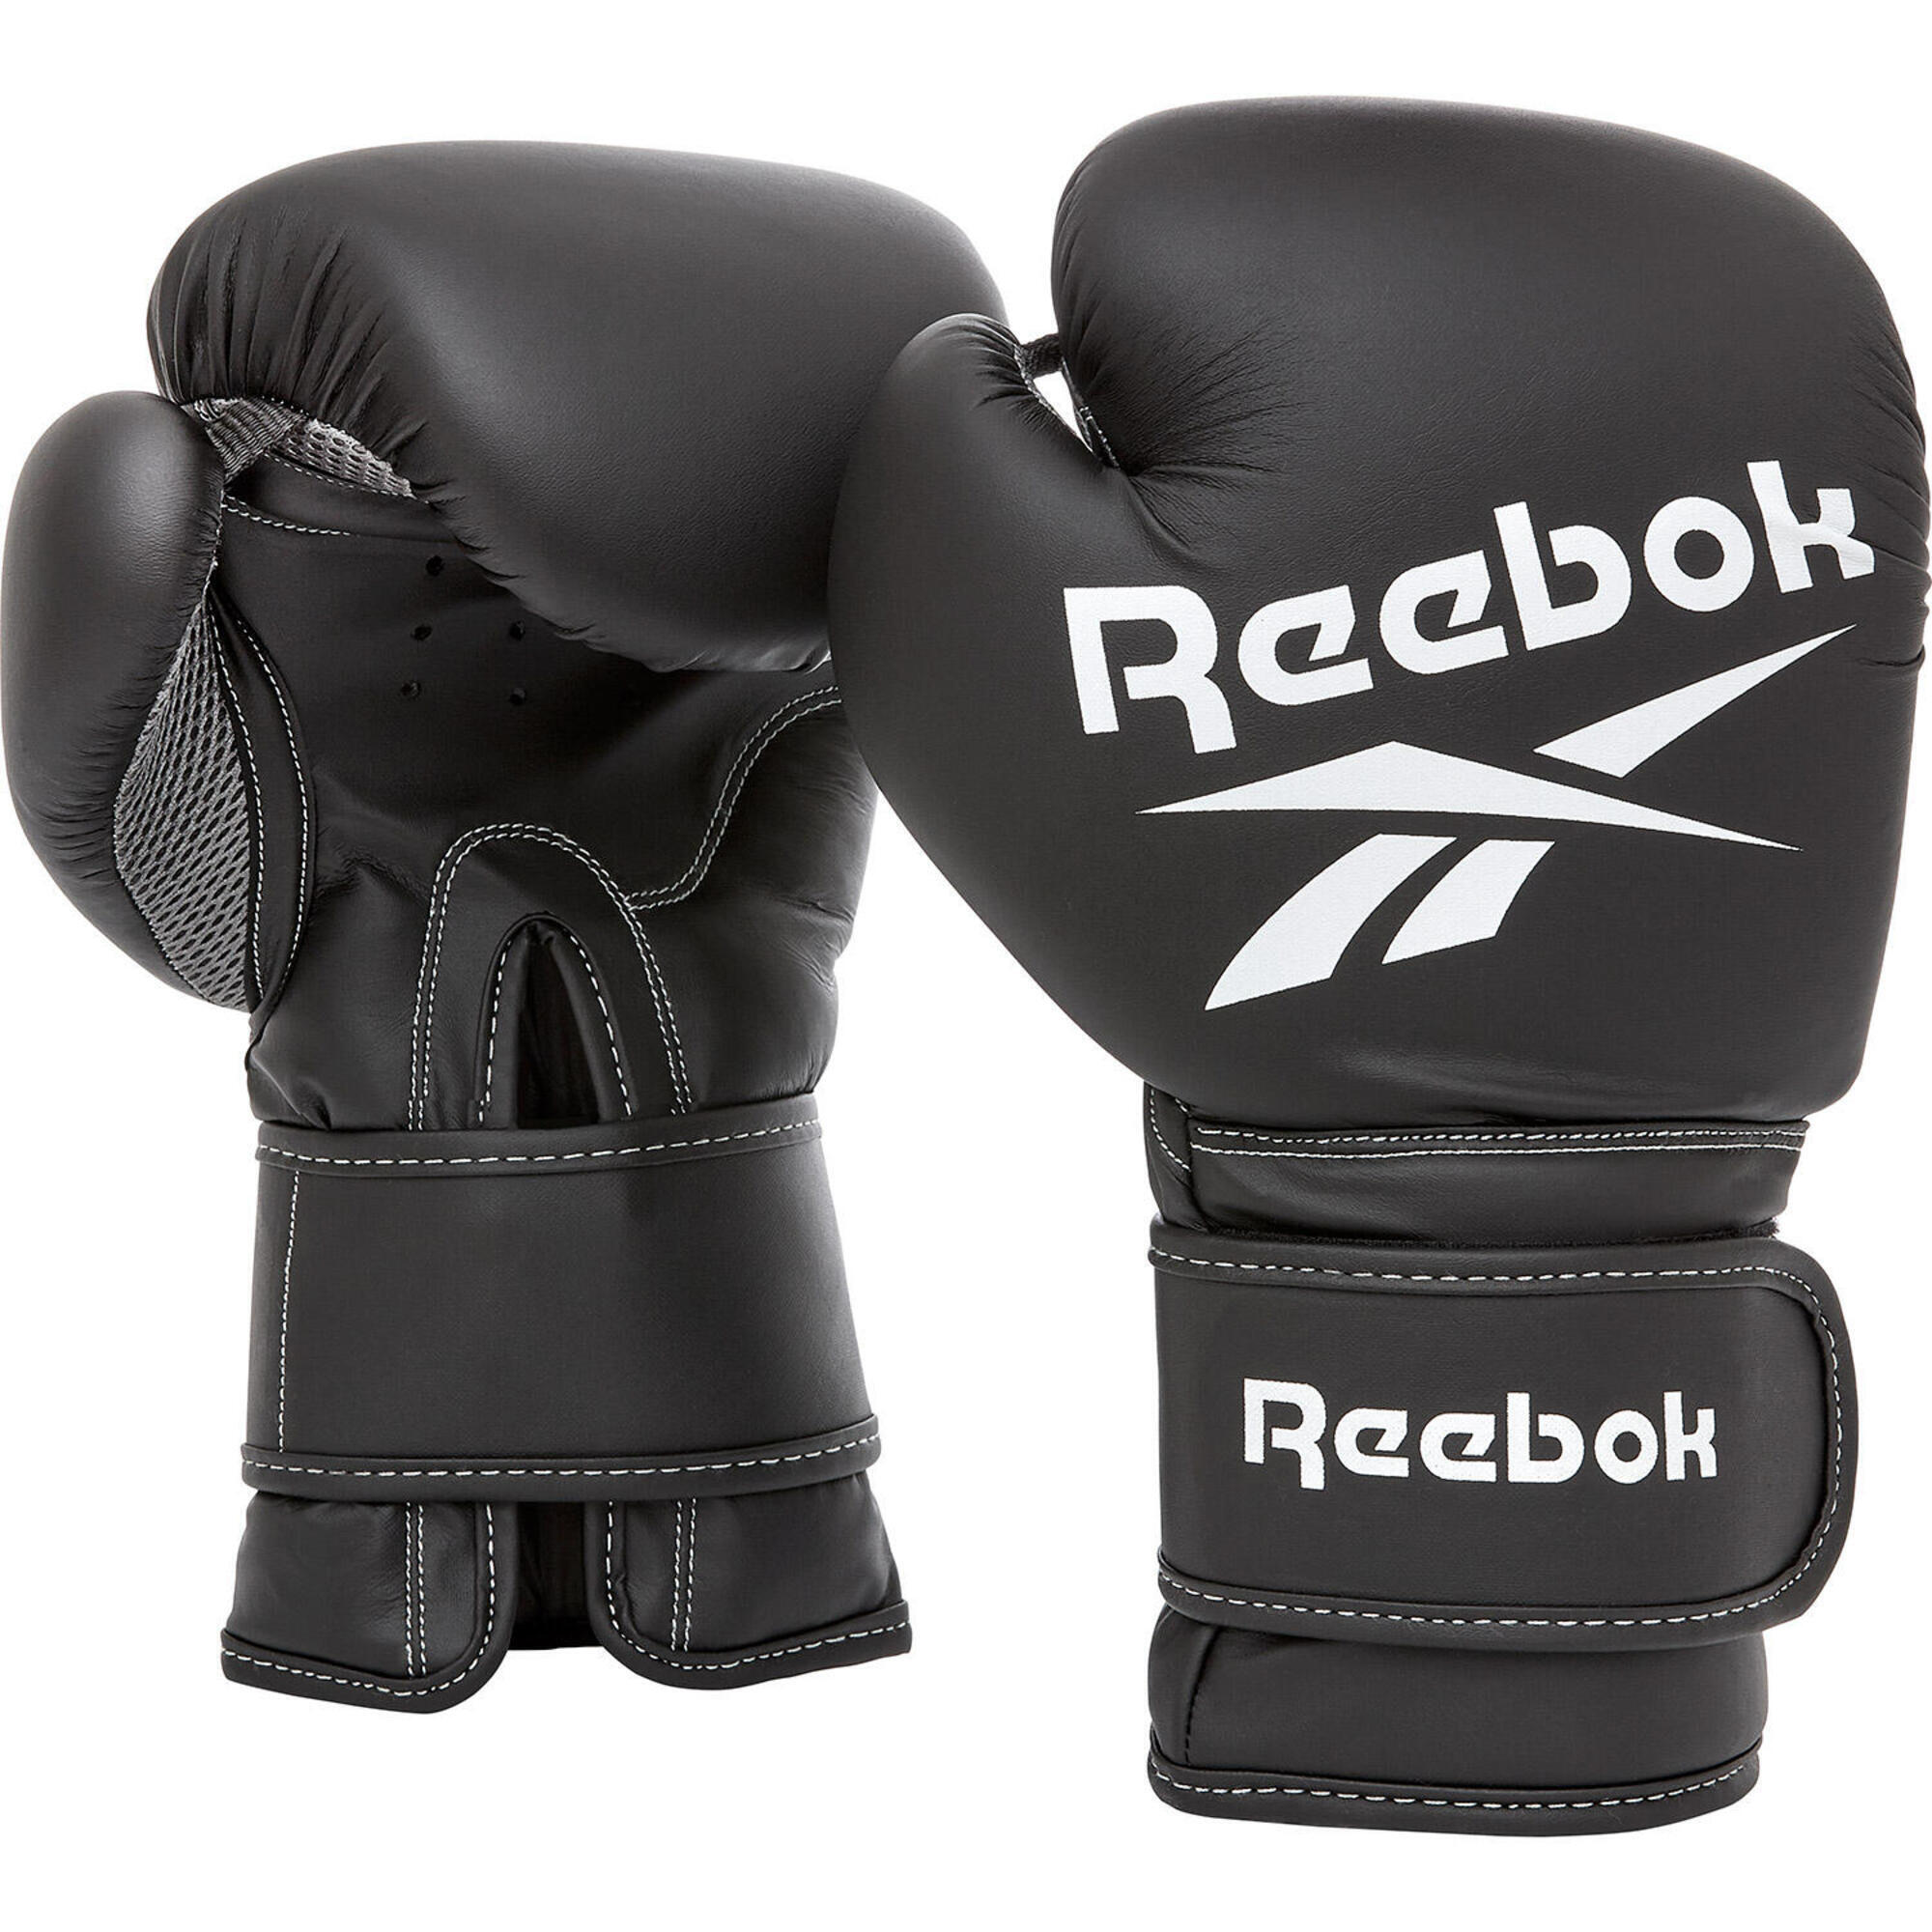 Боксерские перчатки Reebok золотисто-черные 10 унций, черное золото боксерские перчатки twins special bgvla 2 black white 16 унций